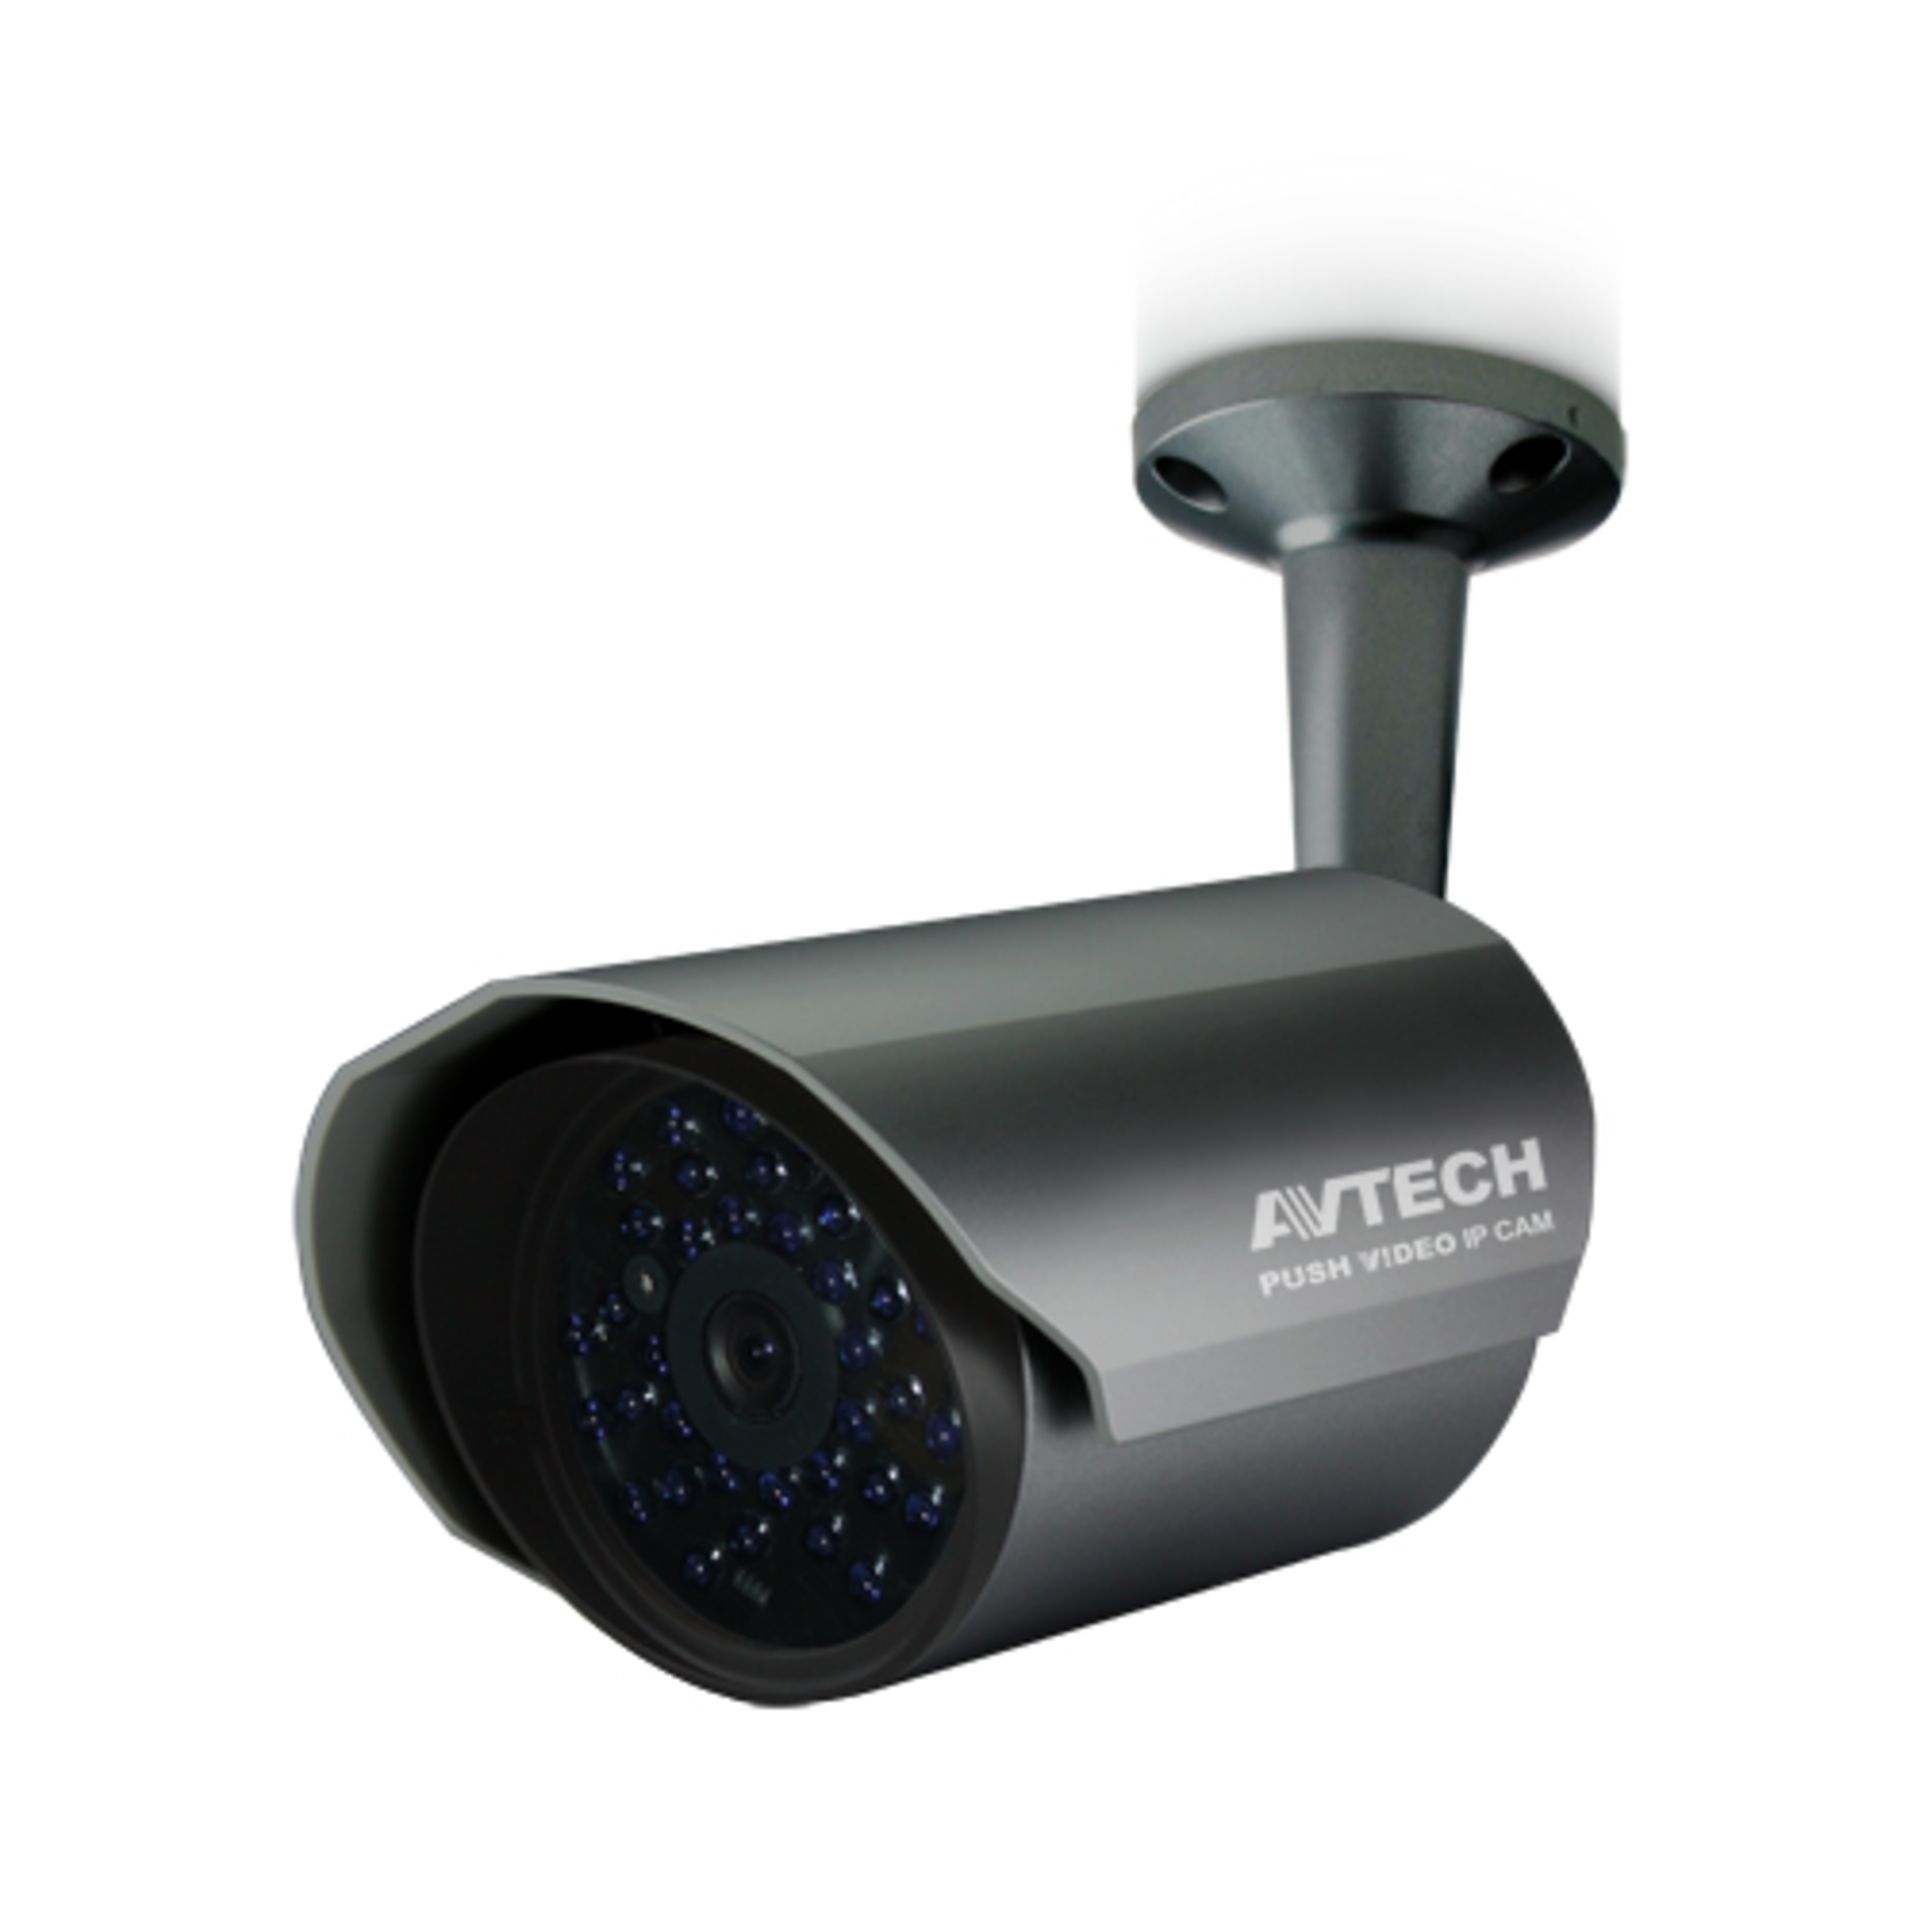 + VAT Grade A Avtech Push Video HDCCTV-Ip Camera-CCTV Camera